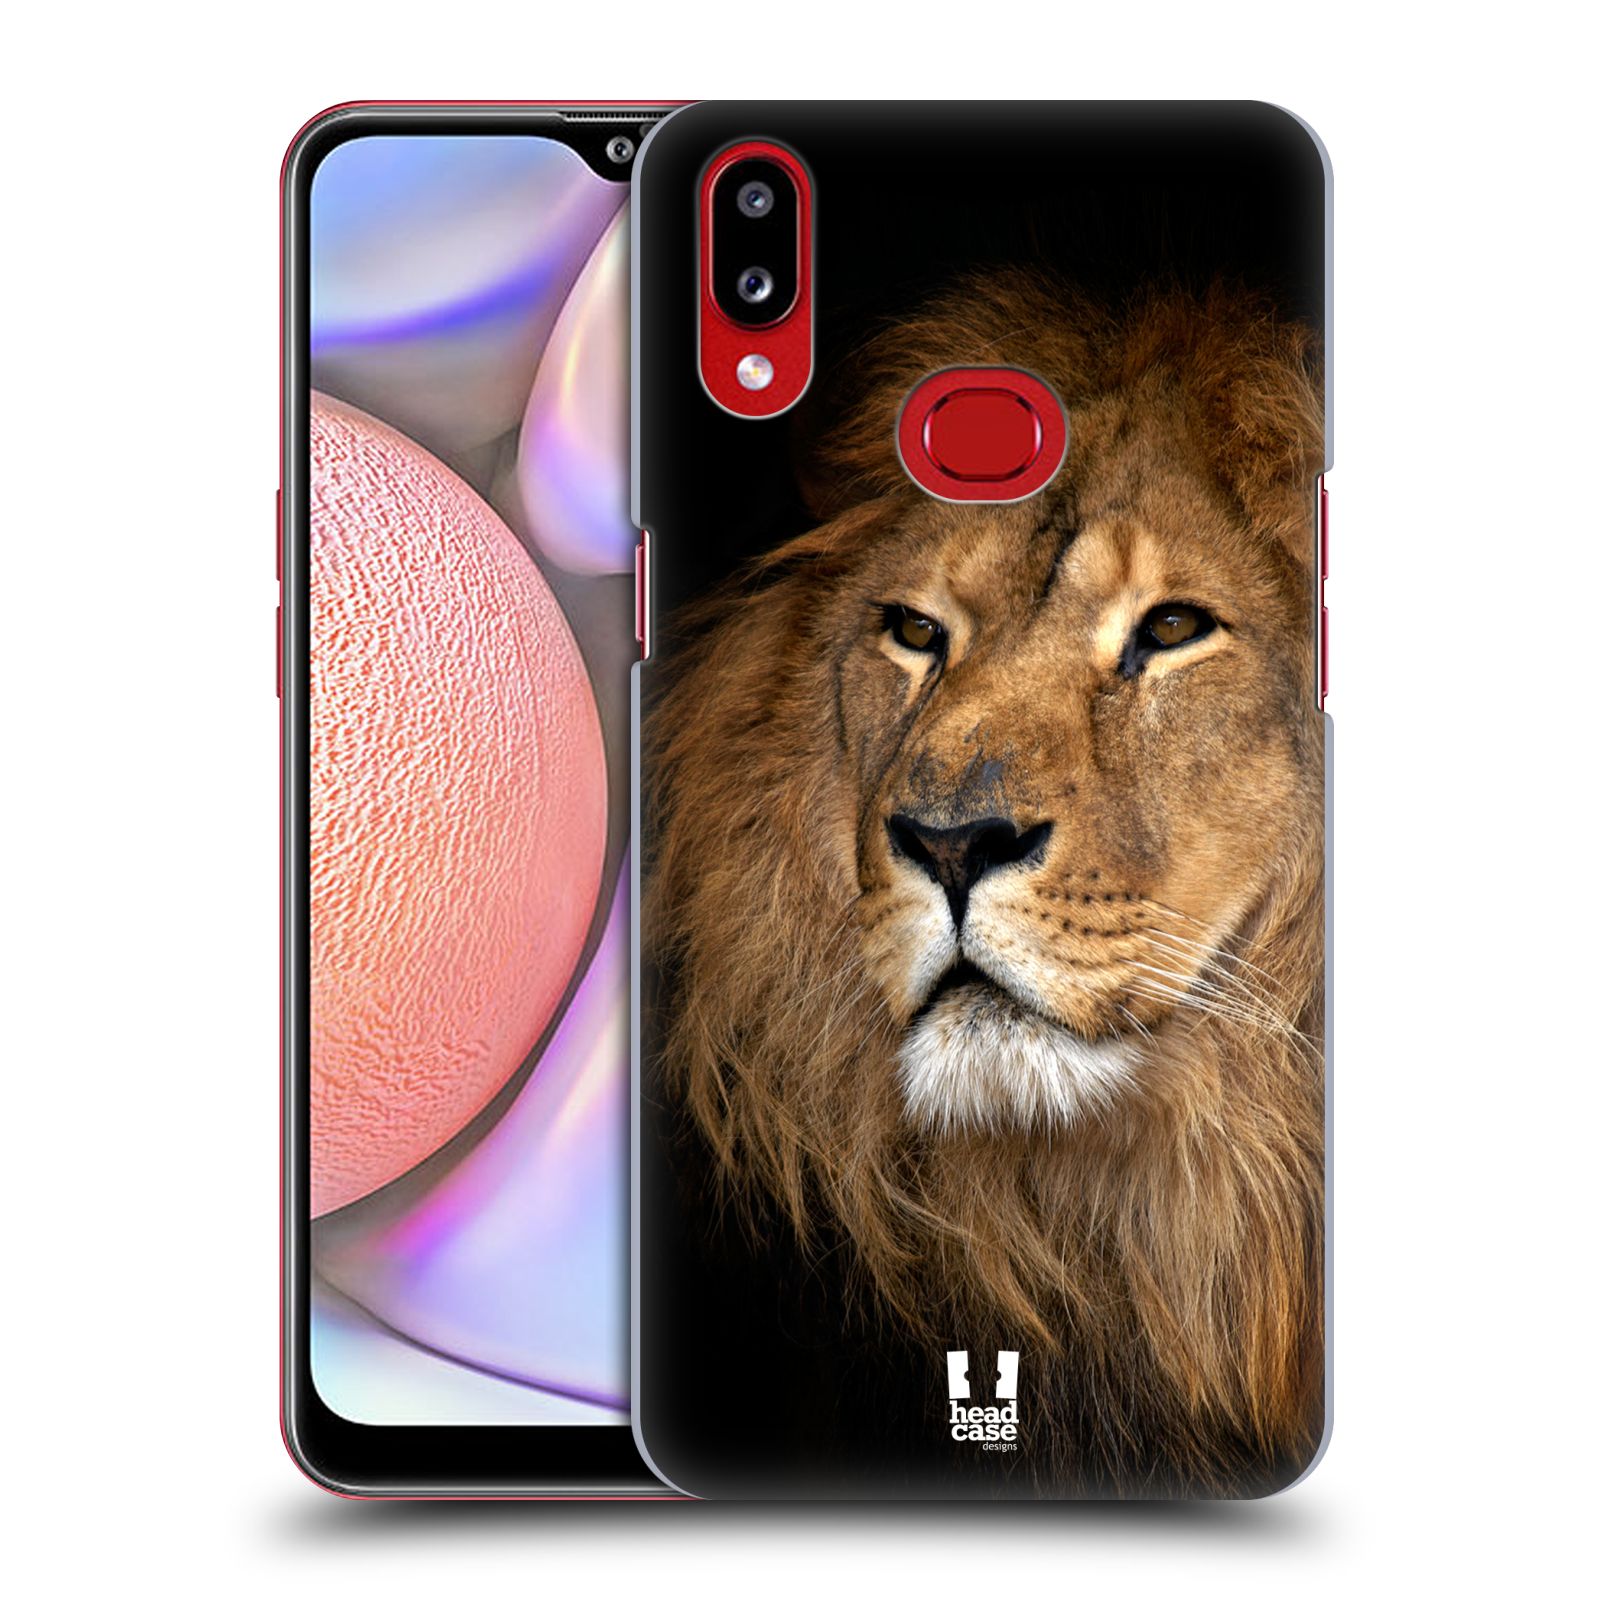 Zadní obal pro mobil Samsung Galaxy A10s - HEAD CASE - Svět zvířat král zvířat Lev